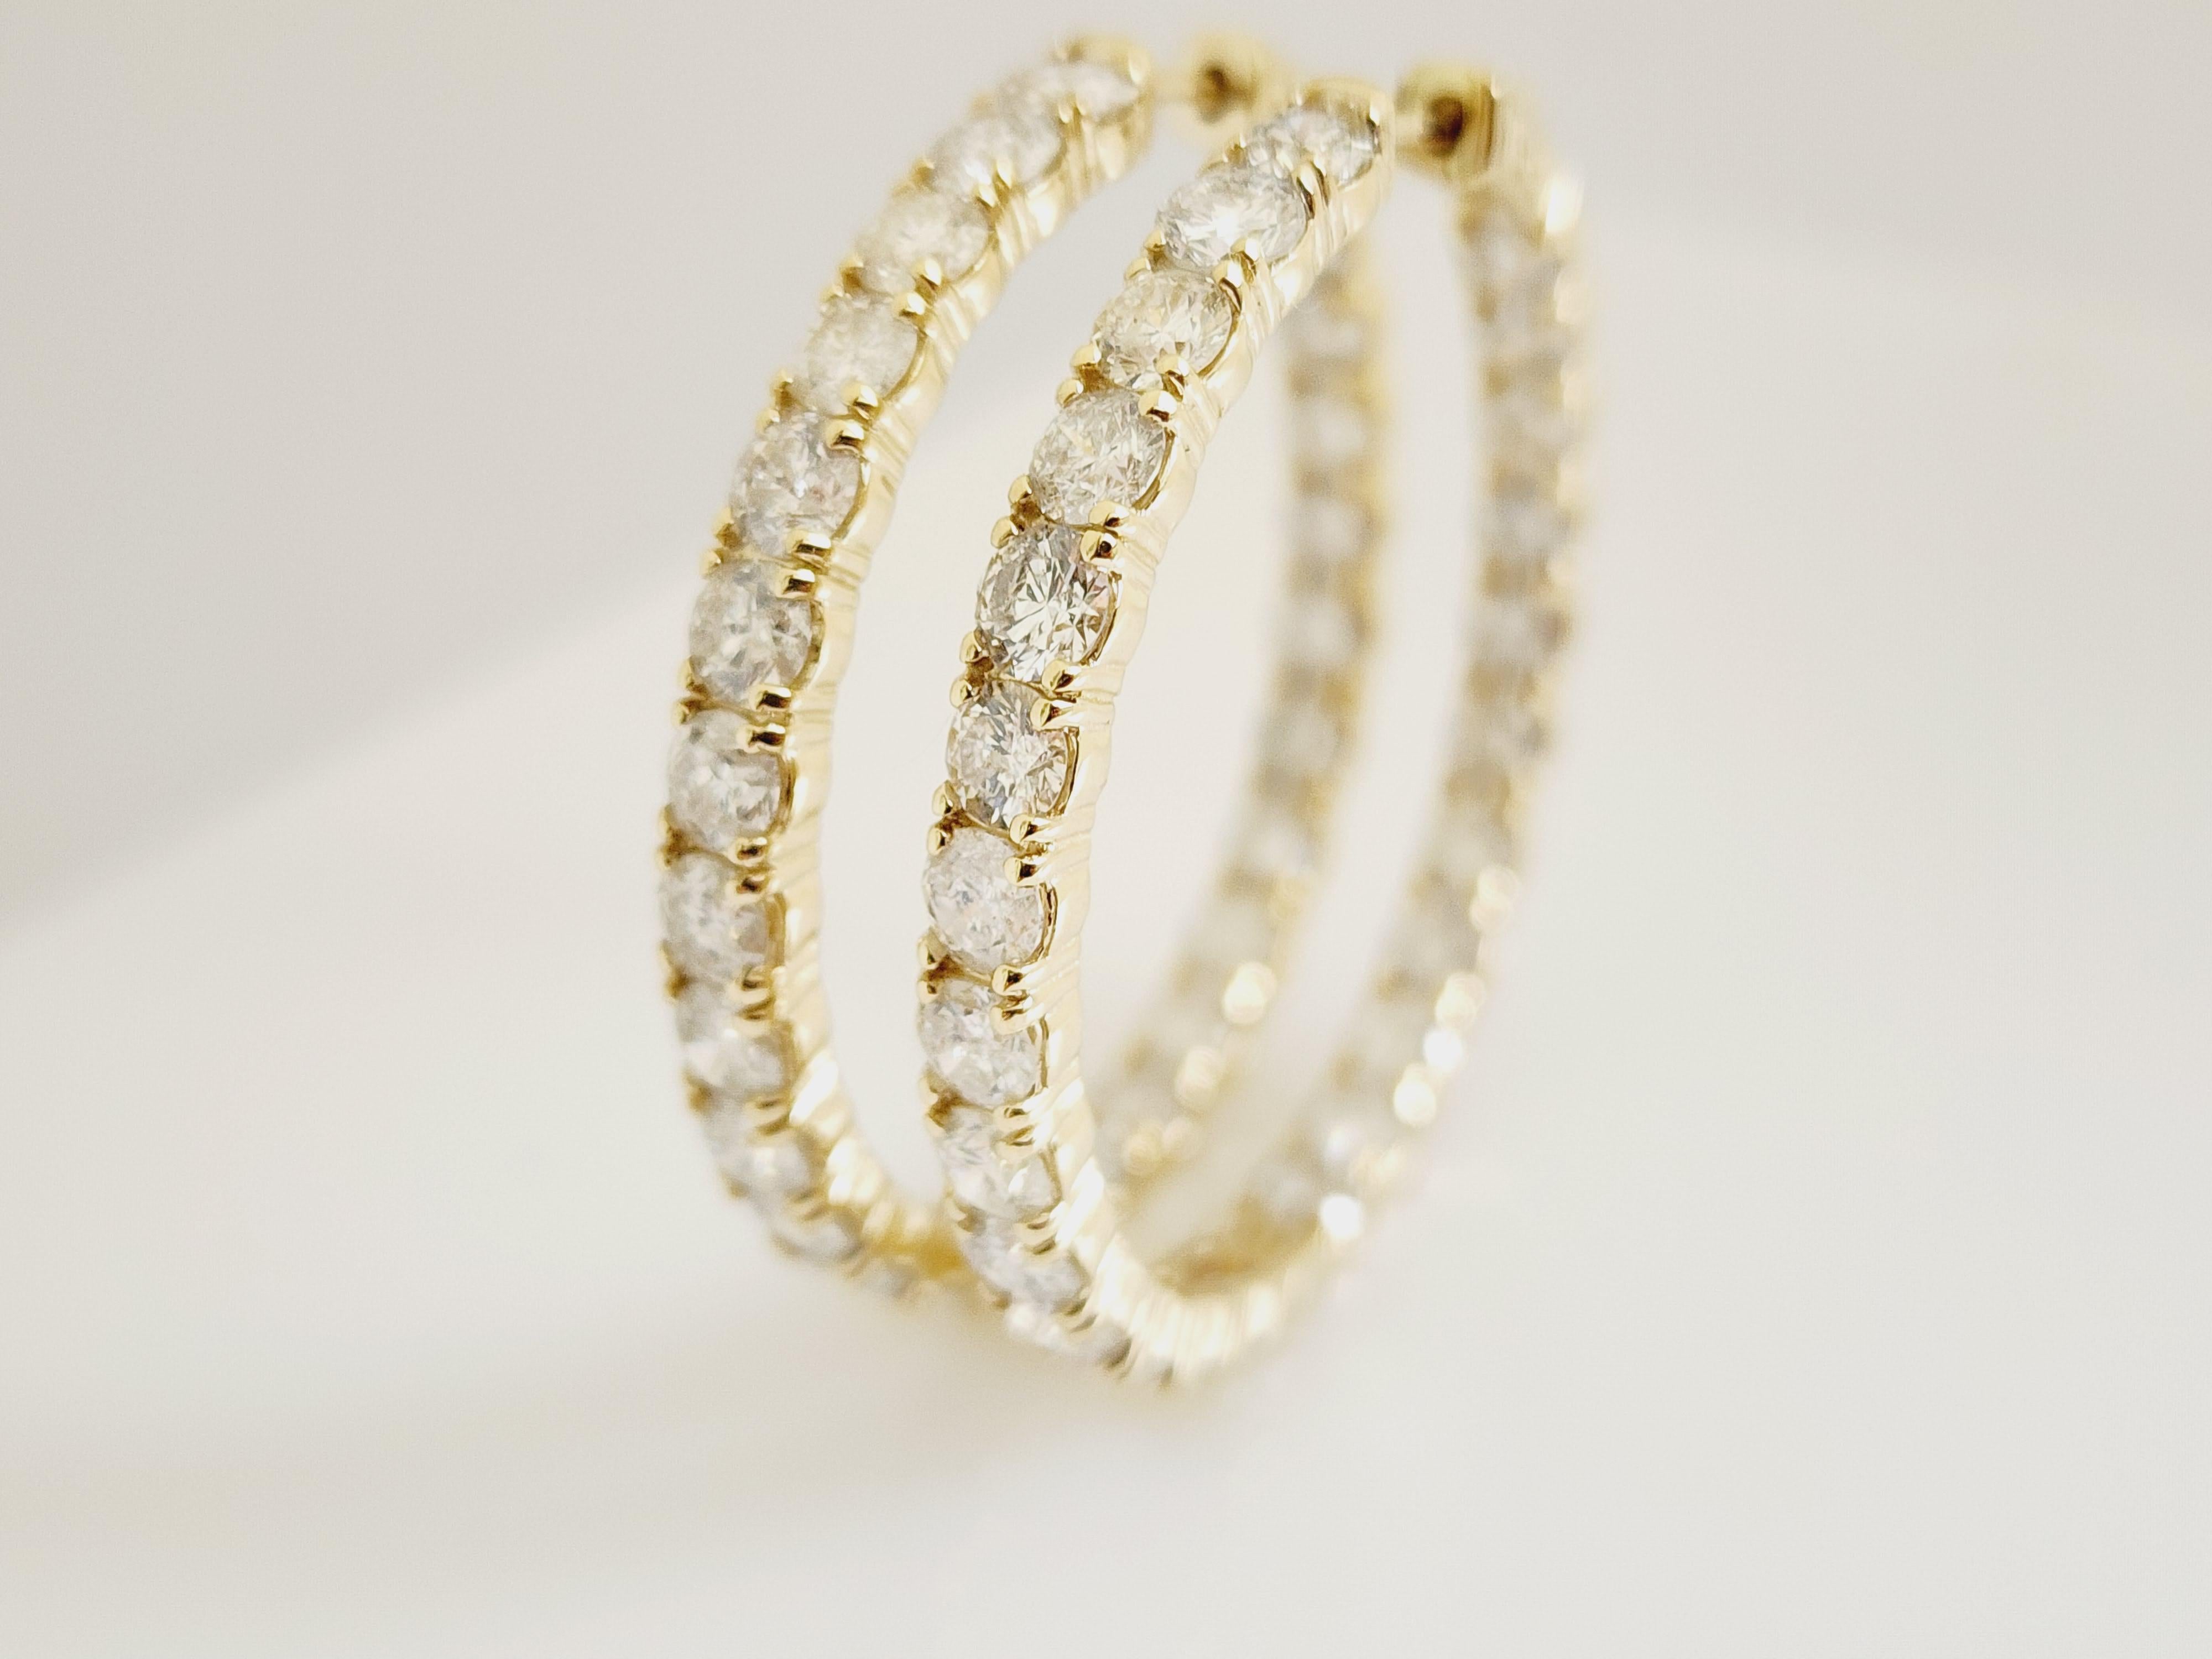 10 Carat Diamond Hoops Earrings 14 Karat Yellow Gold For Sale 2